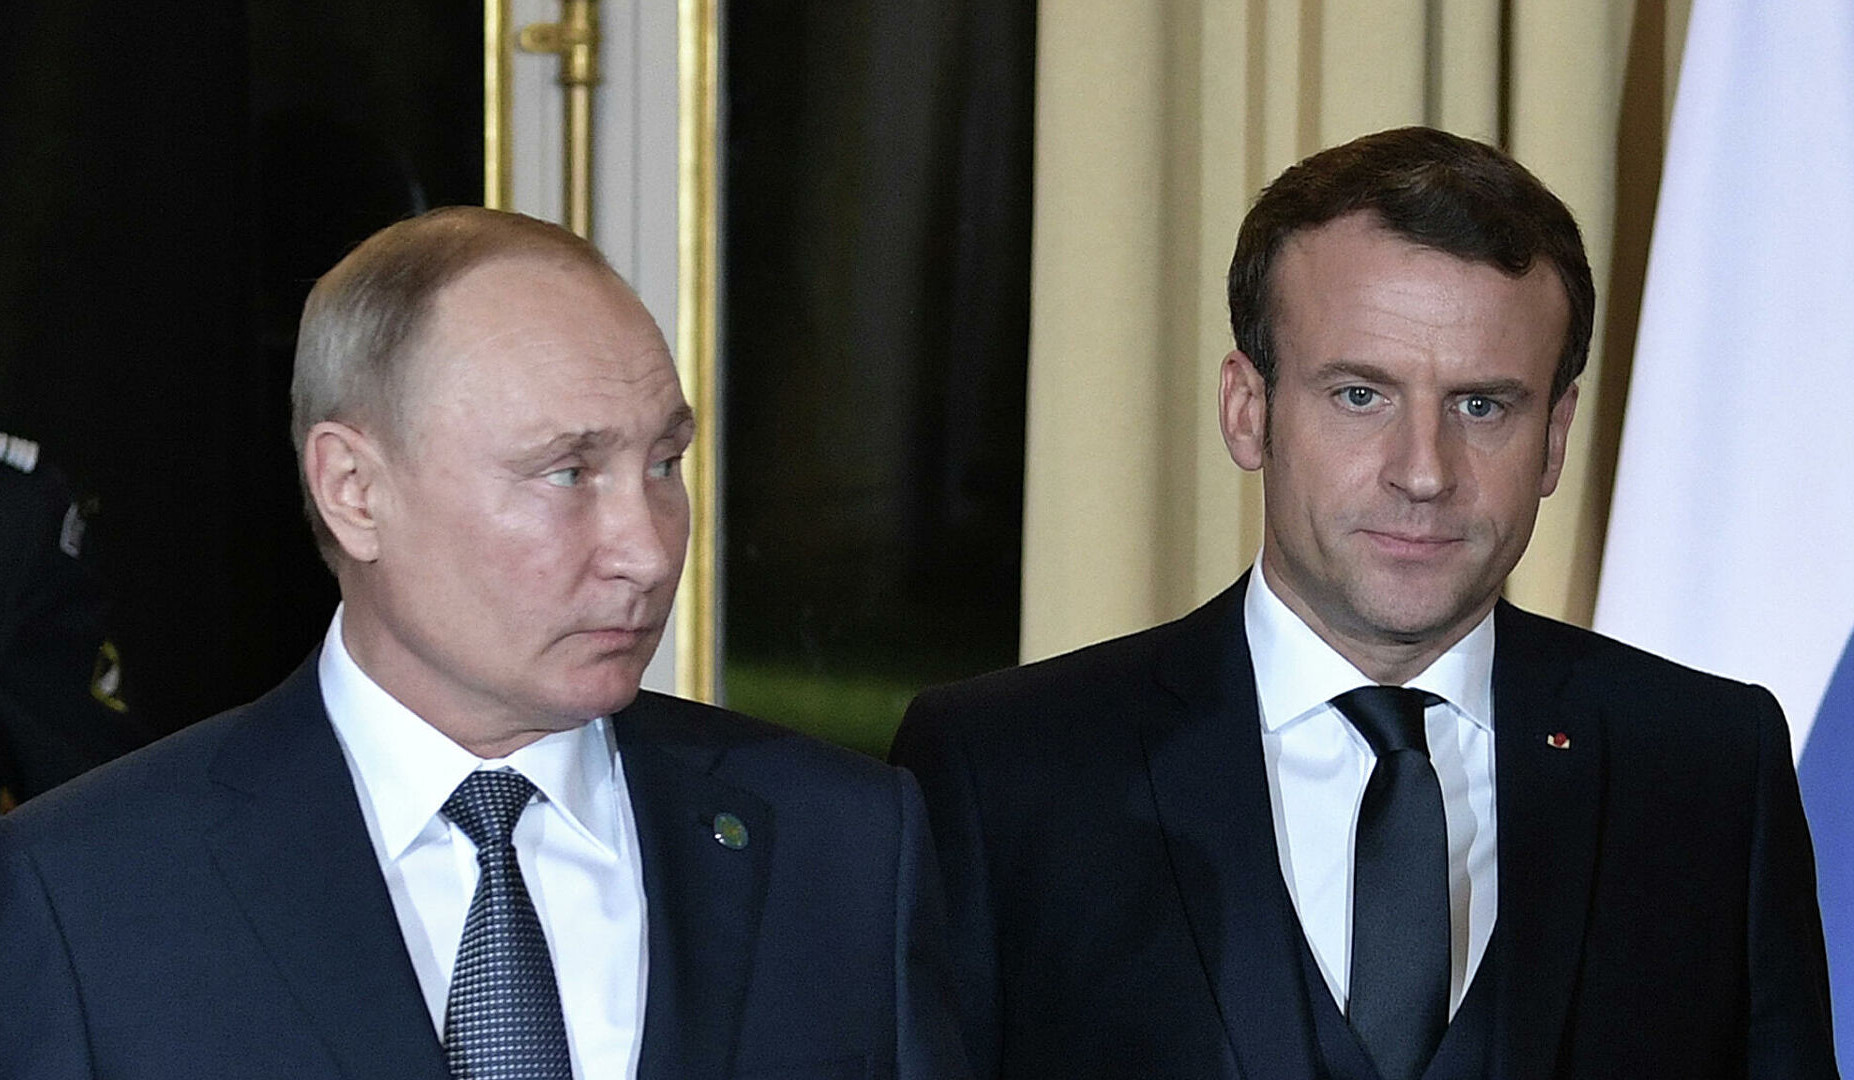 Ռուսաստանի և Ֆրանսիայի նախագահները հեռախոսազրույց են ունեցել. առանցքում անվտանգության հարցերն են